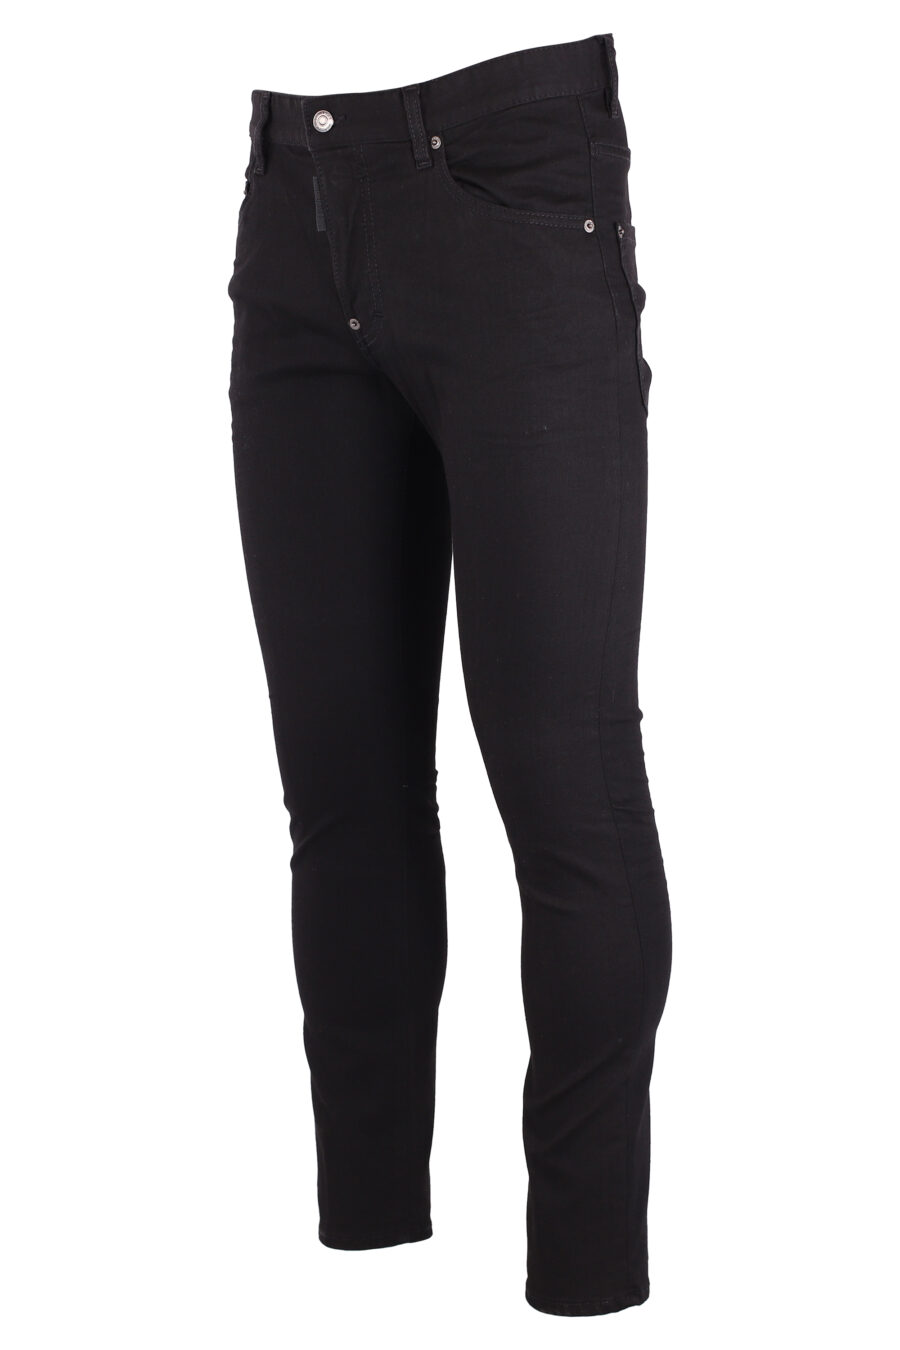 Plain black "skater jean" jeans - IMG 8999